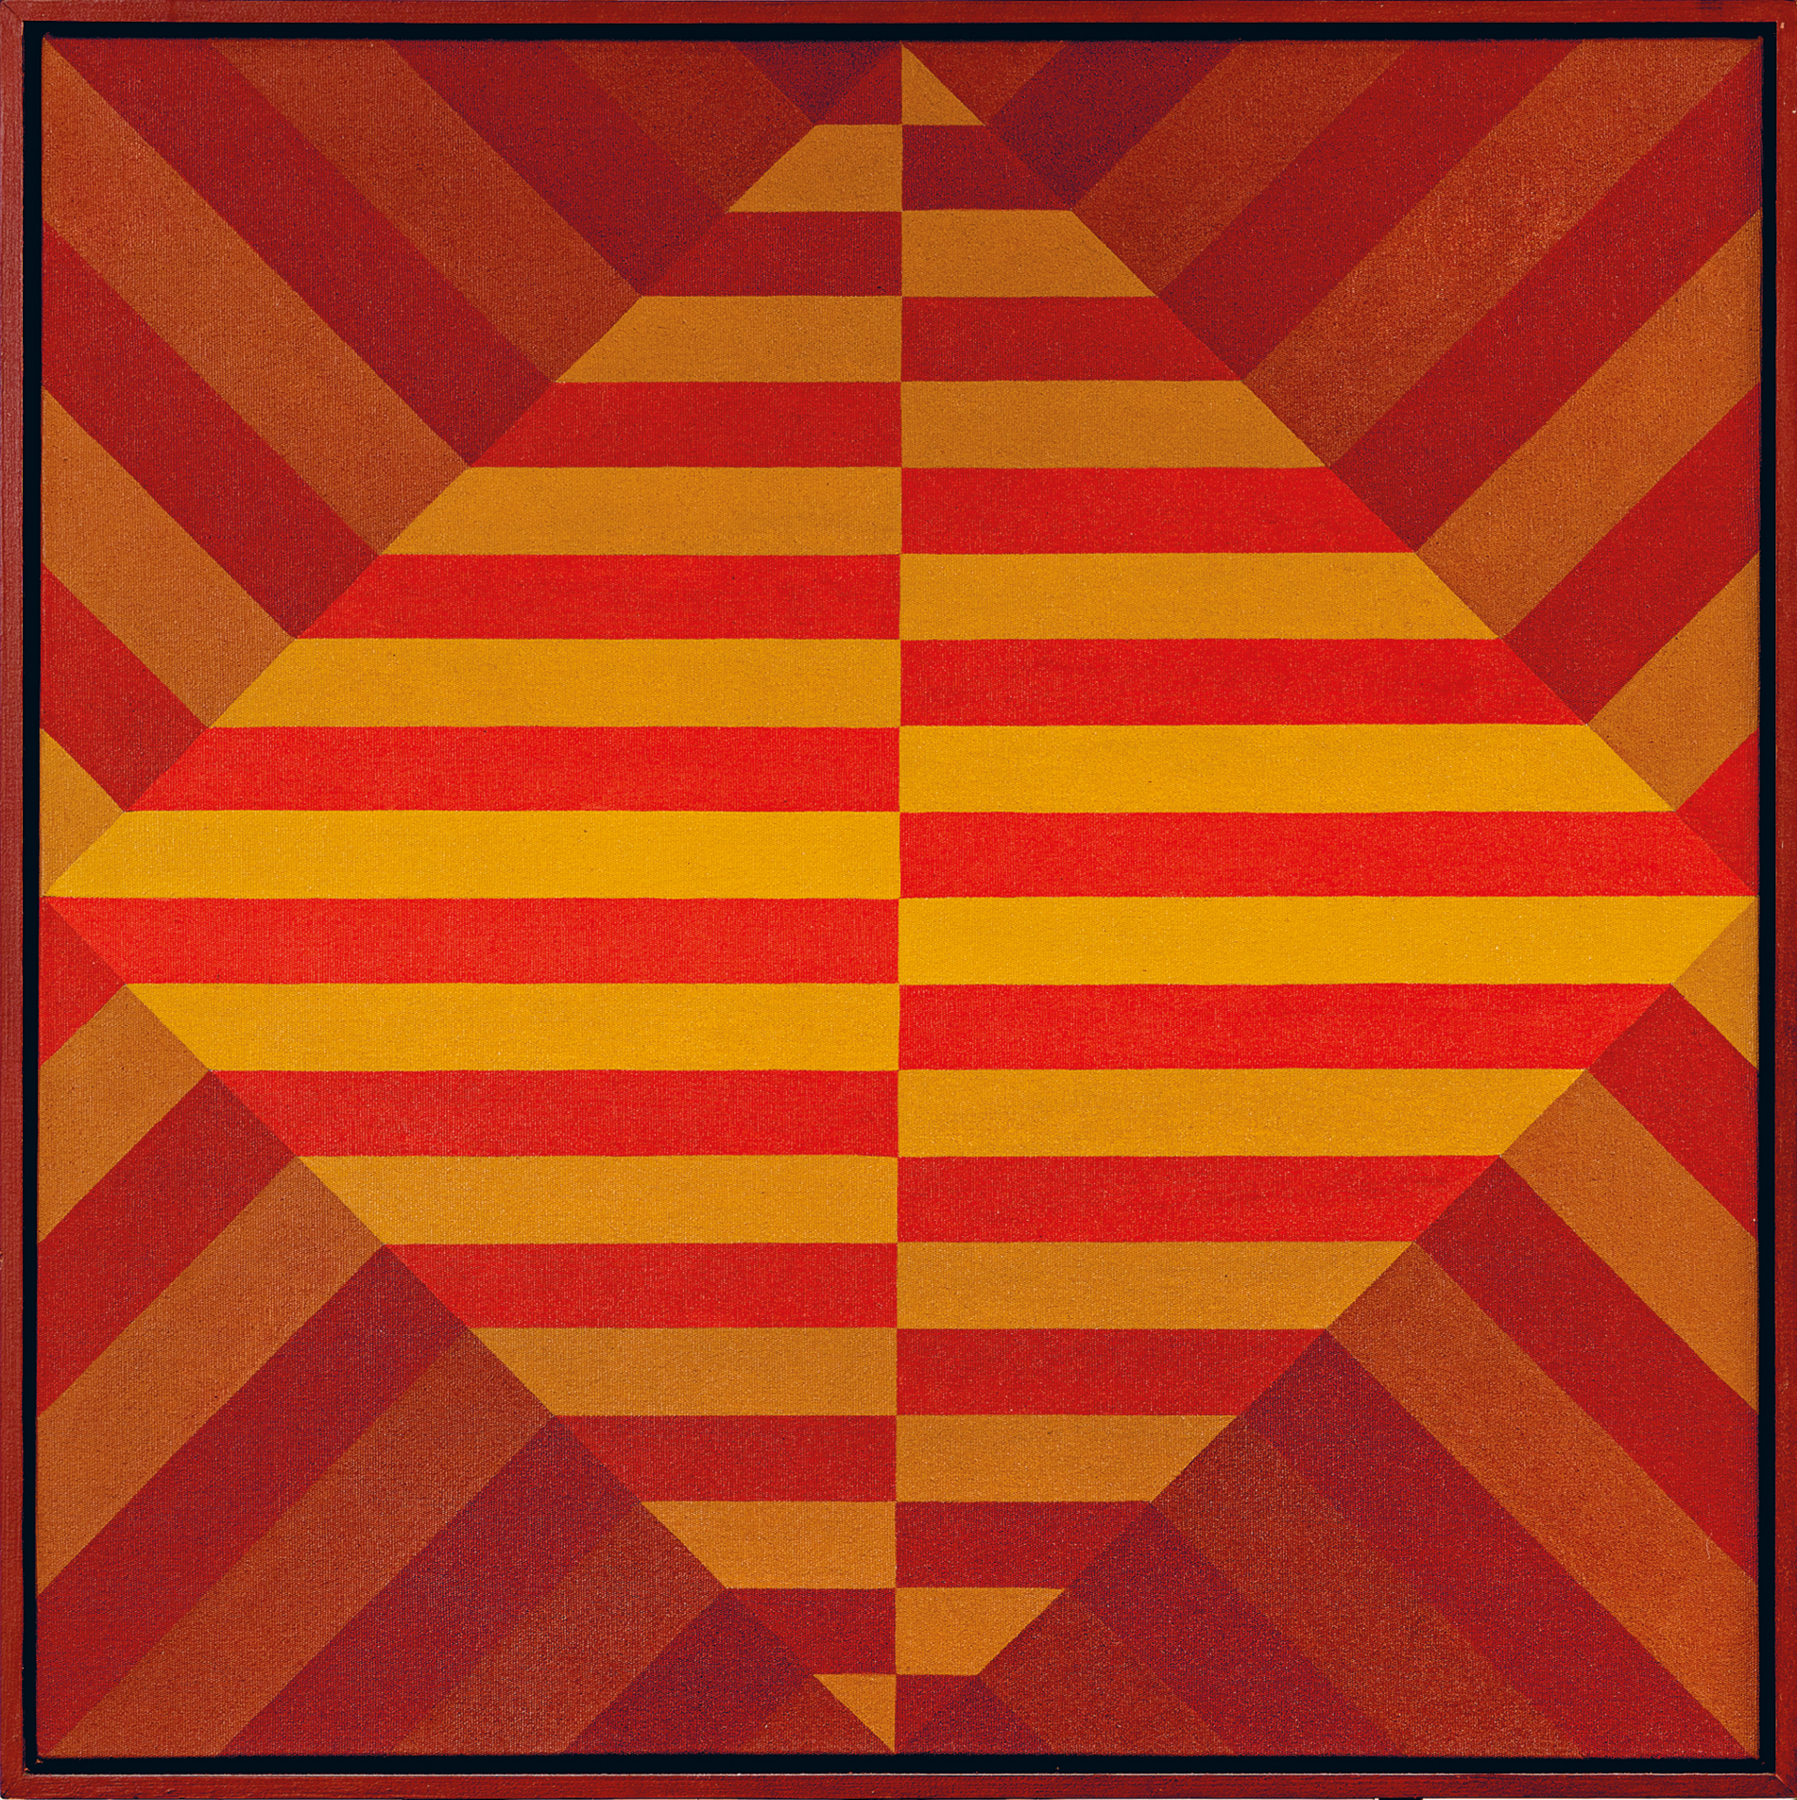 Pintura. Tela quadrada. No centro, losango composto por faixas horizontais intercaladas, nas cores vermelho e amarelo. Ao redor do losango, um triângulo em cada lado do losango, listrados também em vermelho e amarelo.